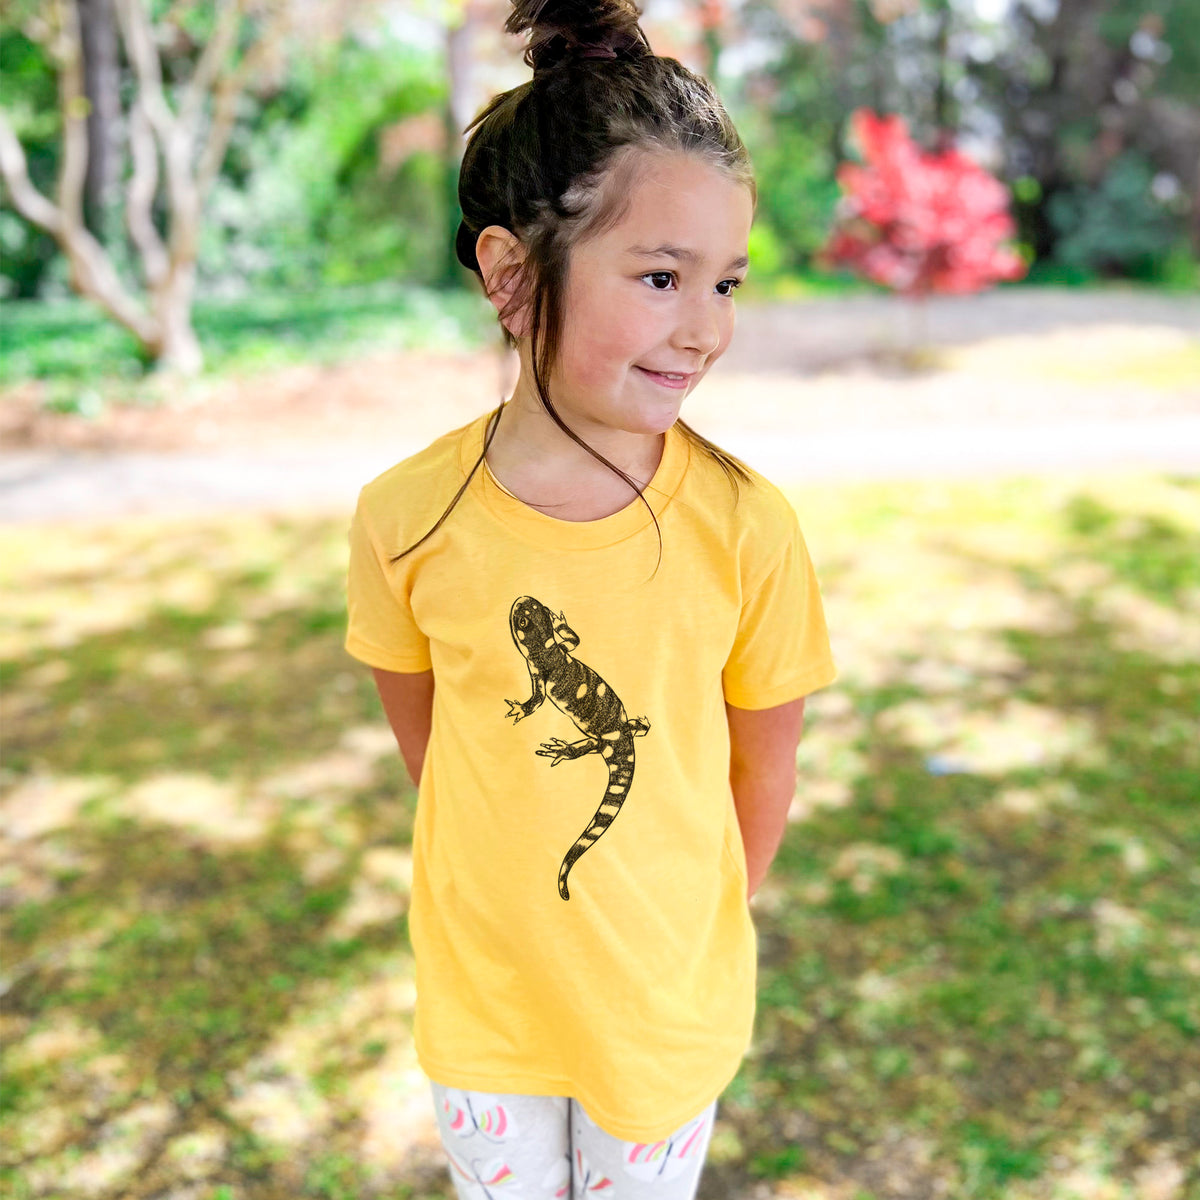 California Tiger Salamander - Ambystoma californiense - Kids Shirt